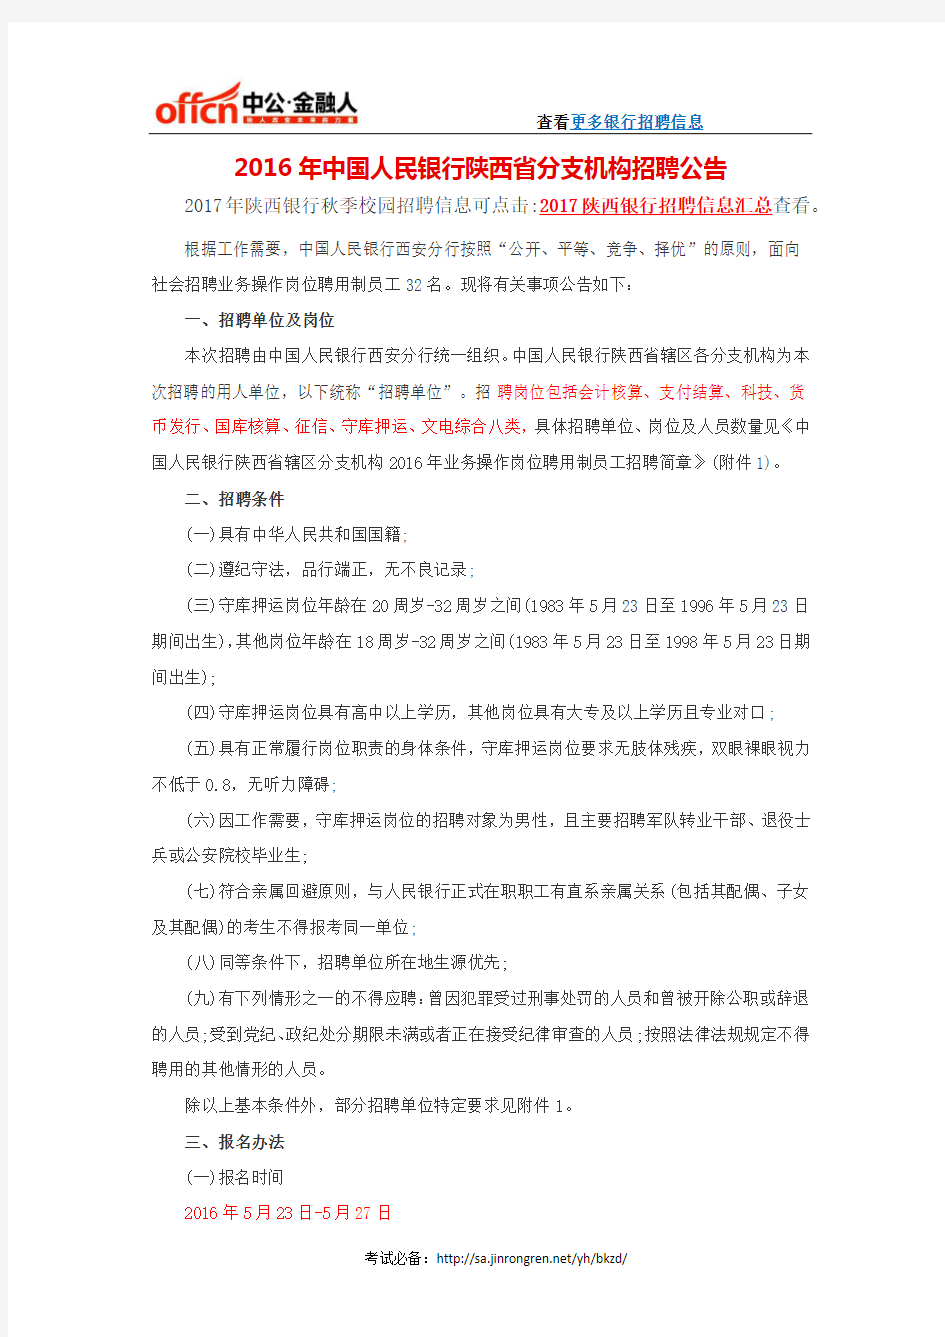 2016年中国人民银行陕西省分支机构招聘公告